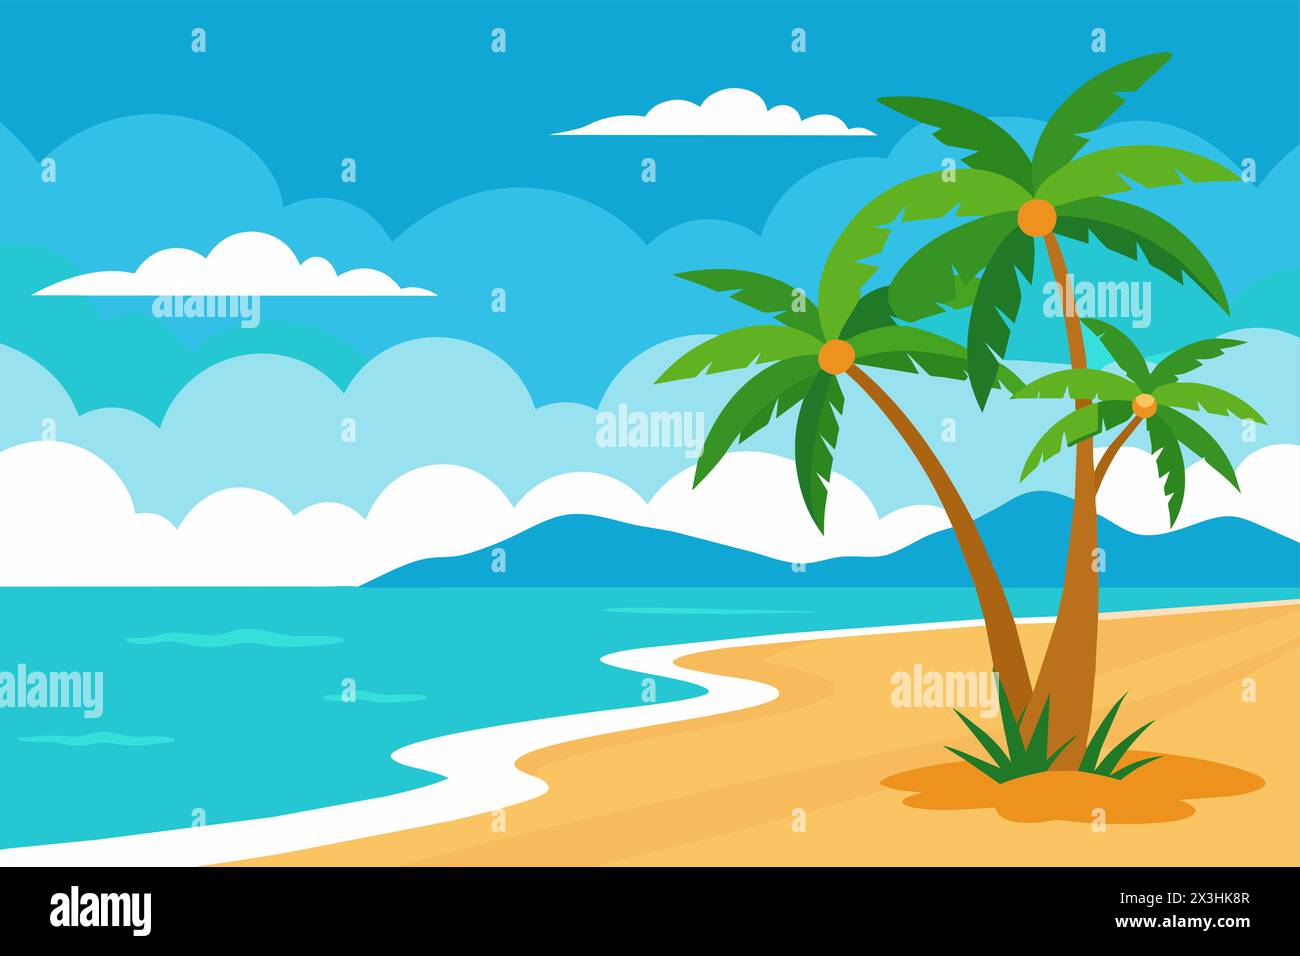 Paesaggio tropicale fronte oceano in colori vivaci. Spiaggia tranquilla con palme e acqua cristallina. Illustrazione grafica. Concetto di vacanza, Coas Illustrazione Vettoriale